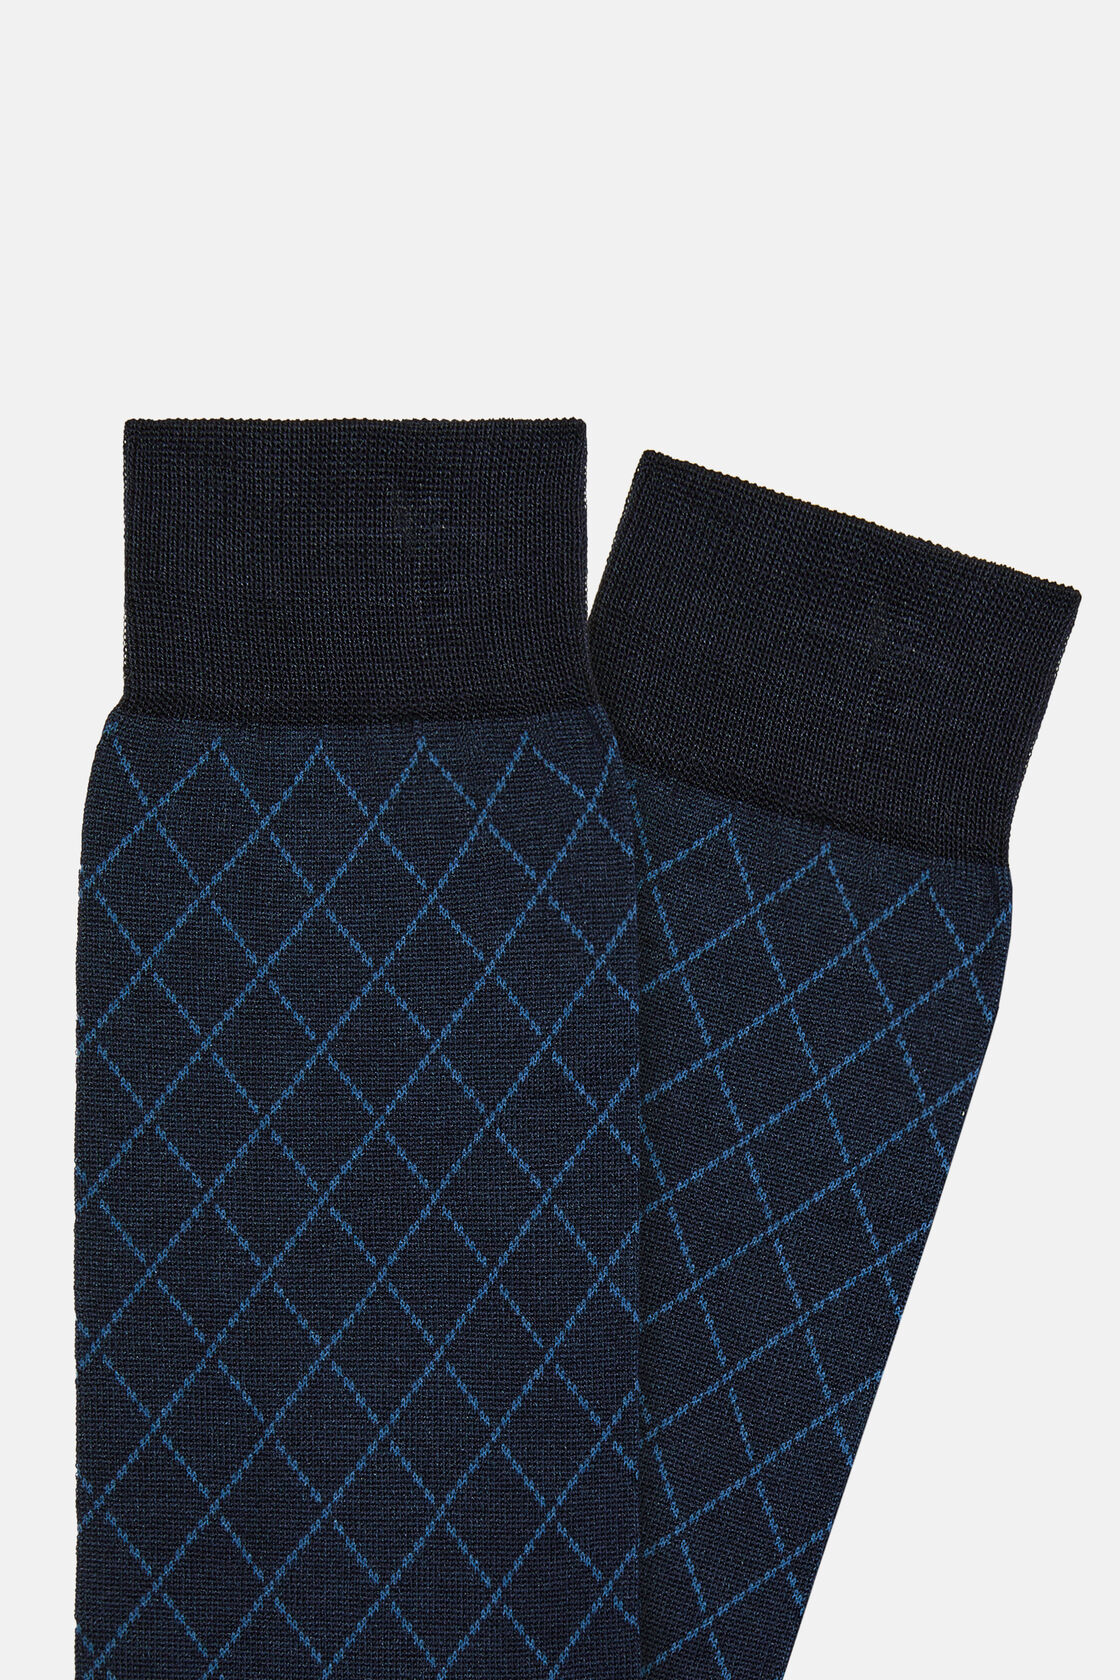 Skarpetki w geometryczny wzór z mieszanki bawełny, Navy blue, hi-res